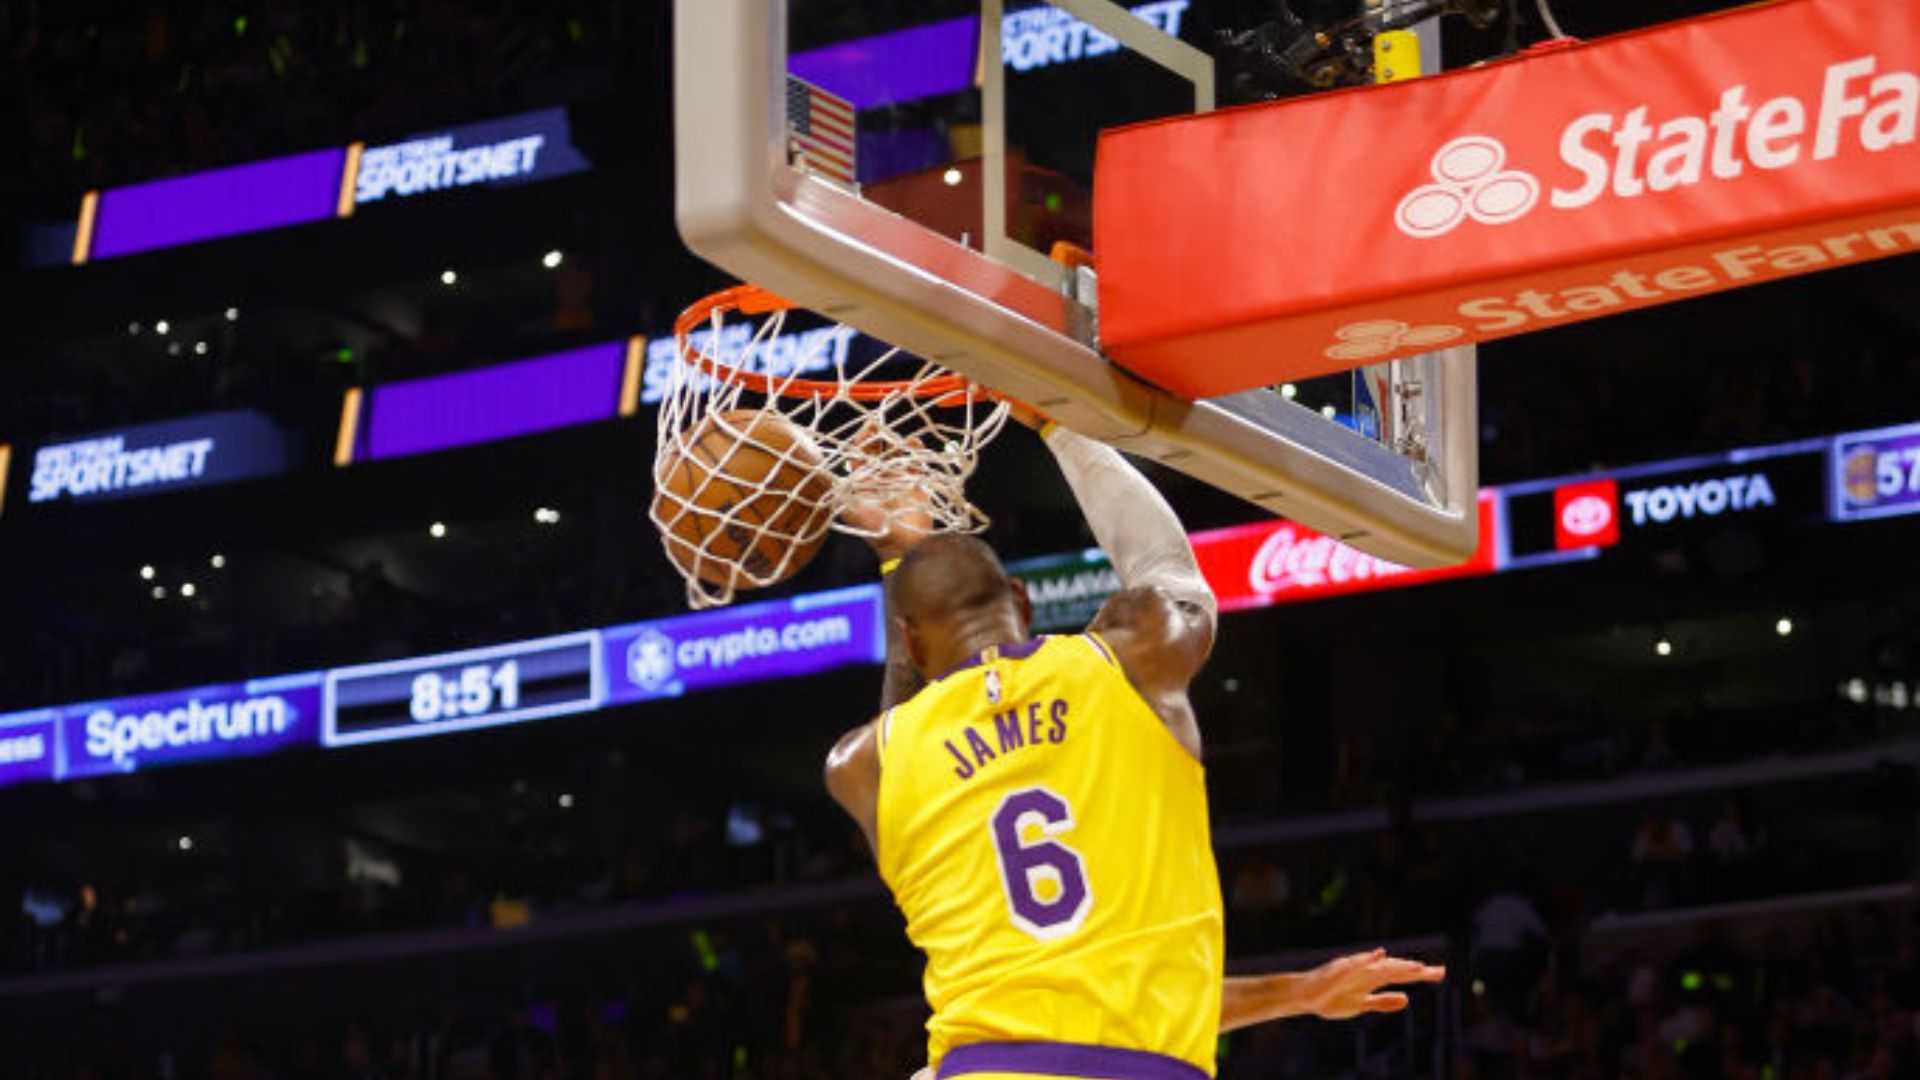 Com bela estreia da dupla LeBron-Davis, Lakers vencem Warriors em